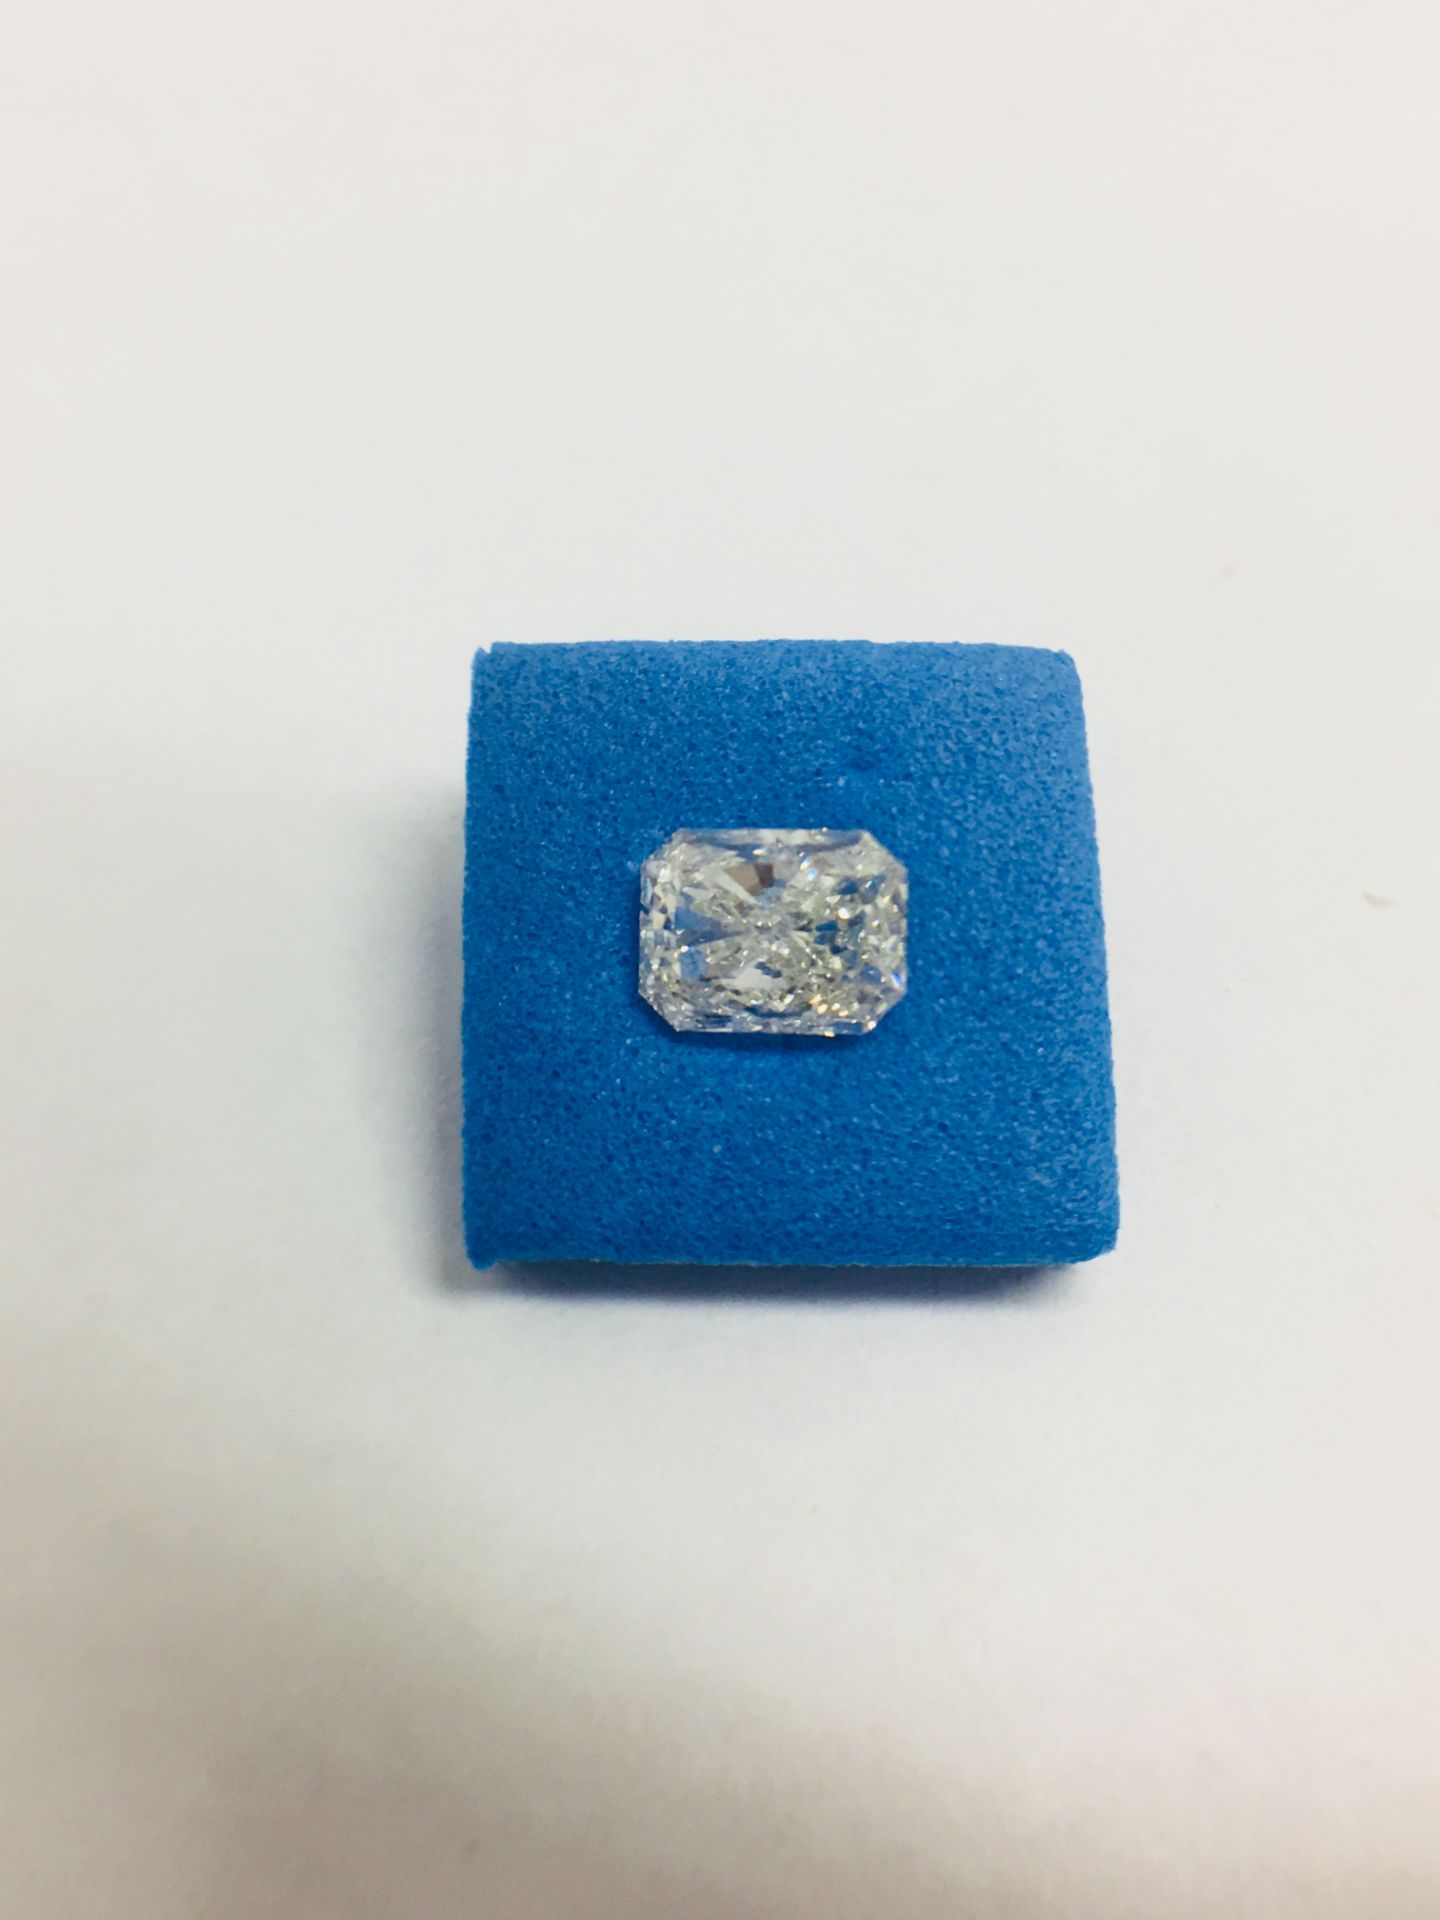 1.02ct Radiant cut Diamond,J Coloured,si2 clarity,clarity enhanced